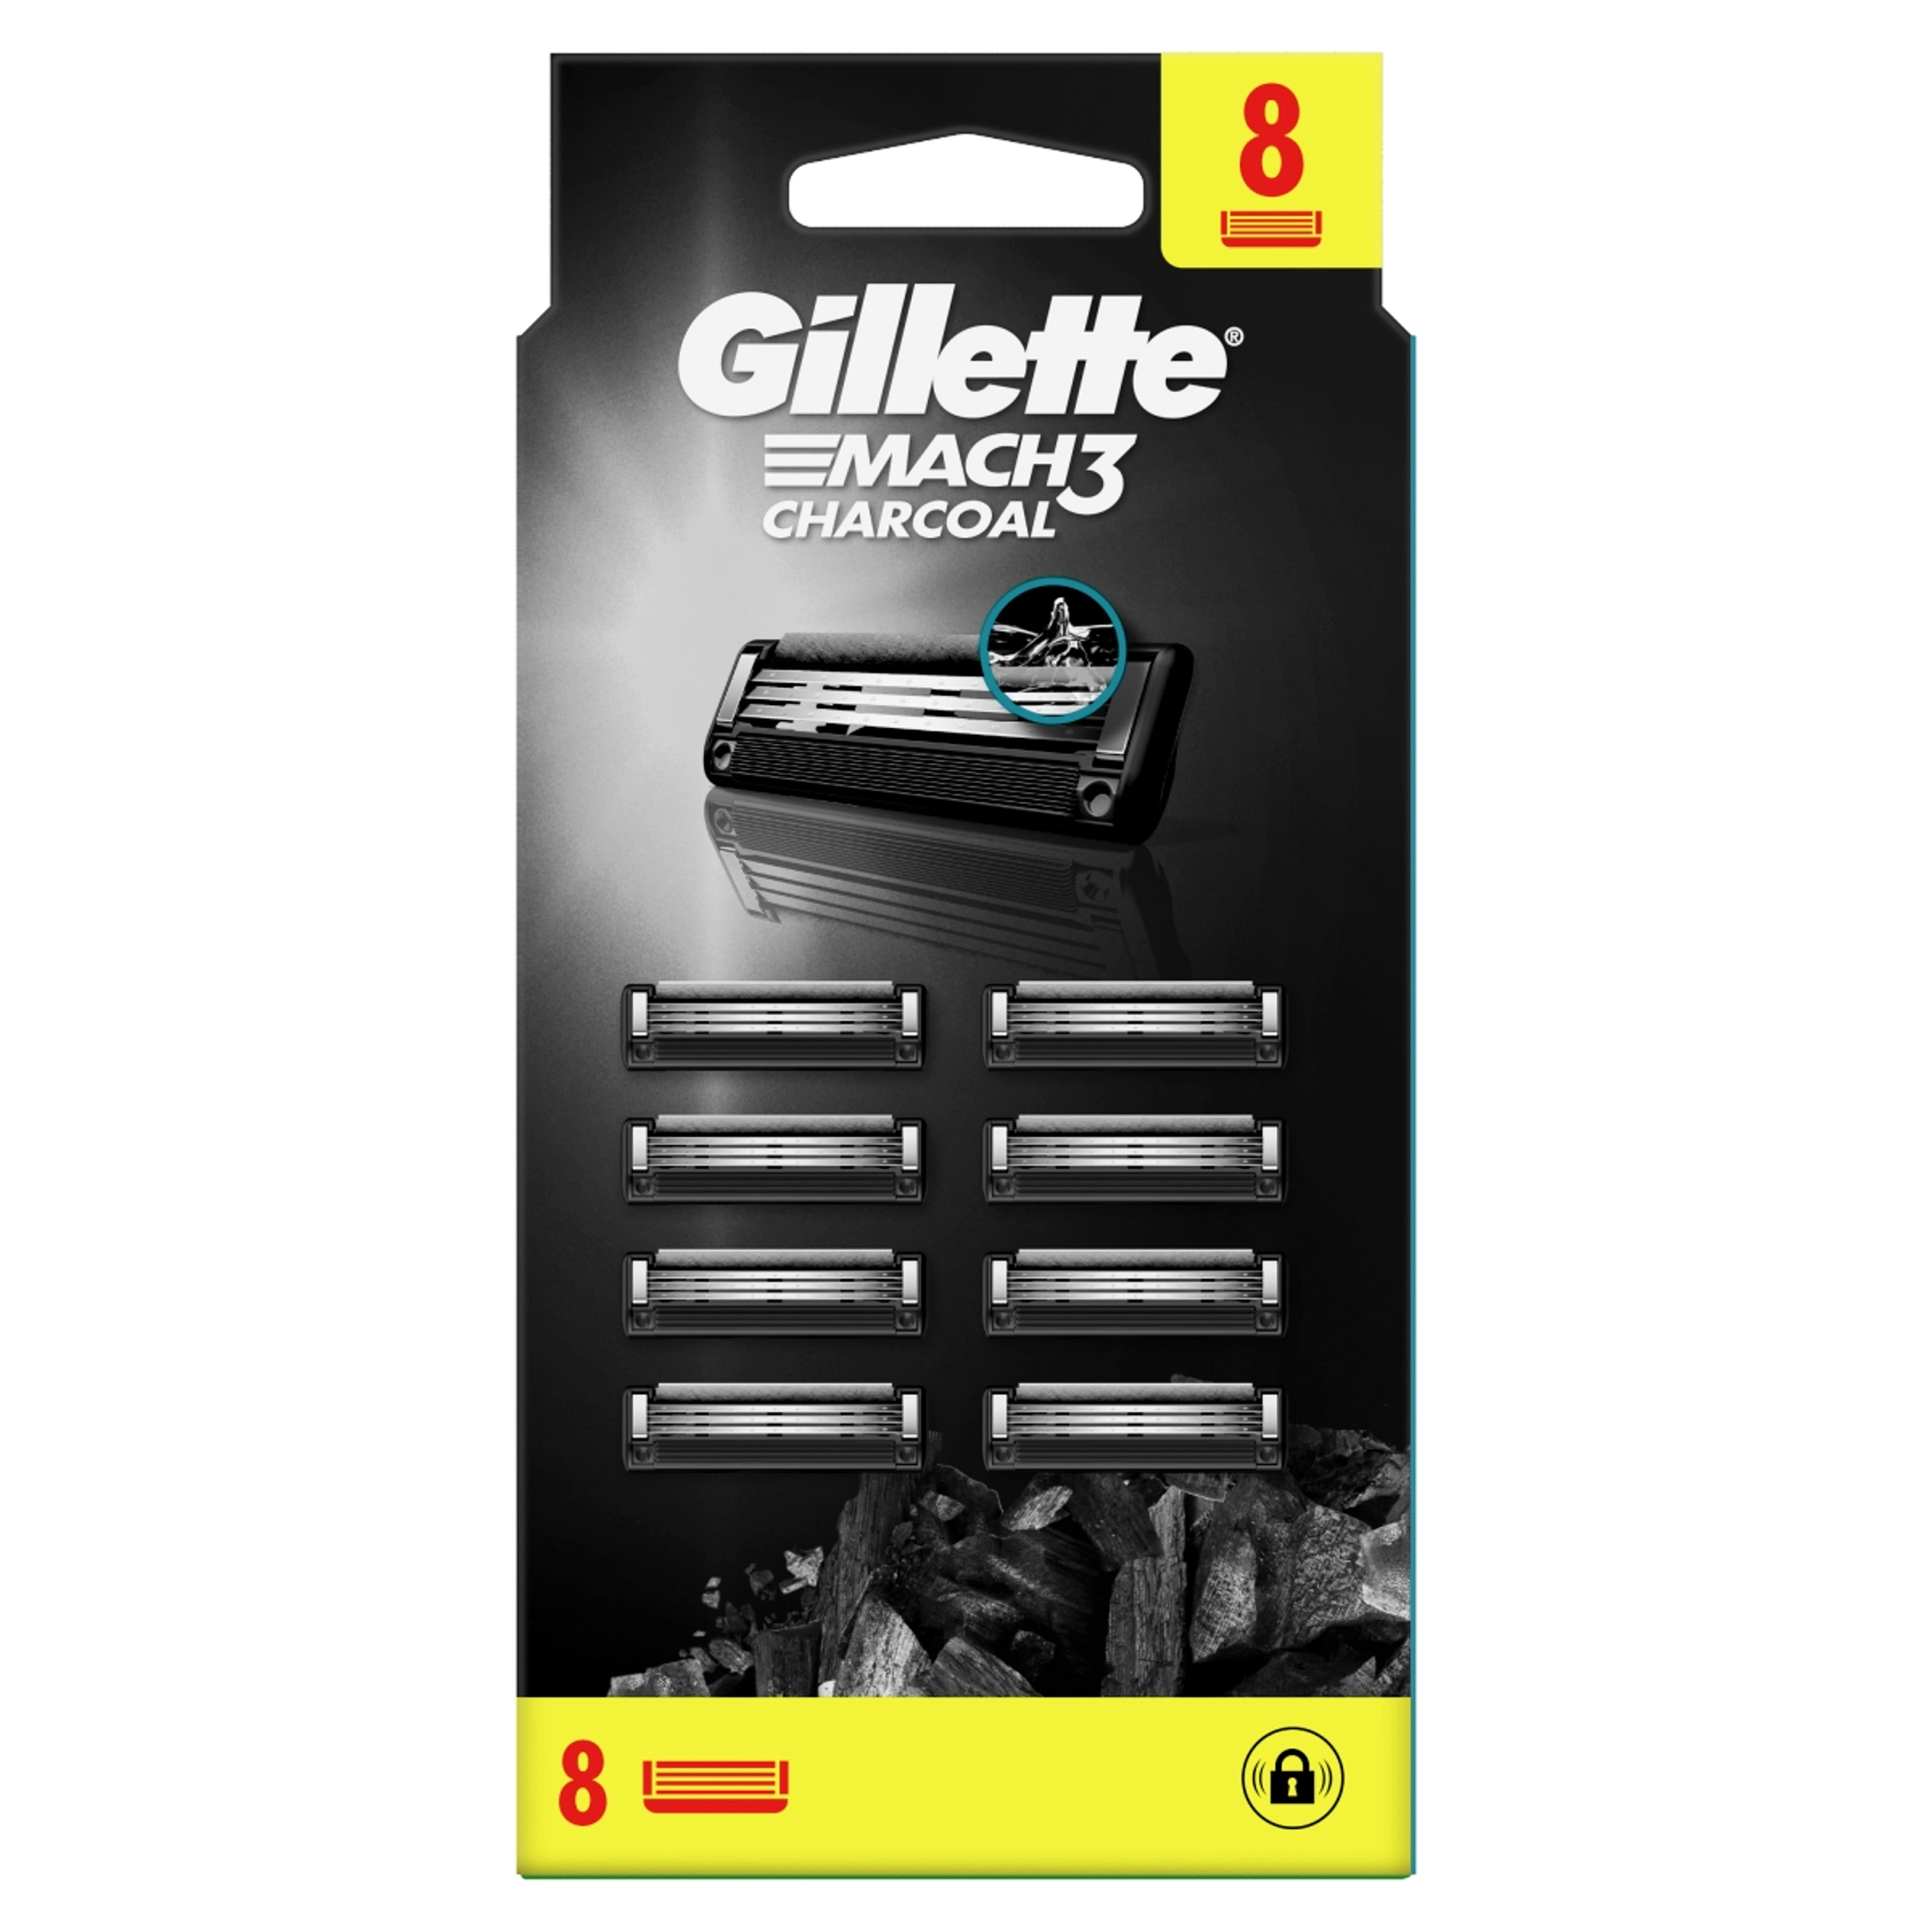 Gillette Mach3 Charcoal borotvabetétek férfi borotvához - 8 db